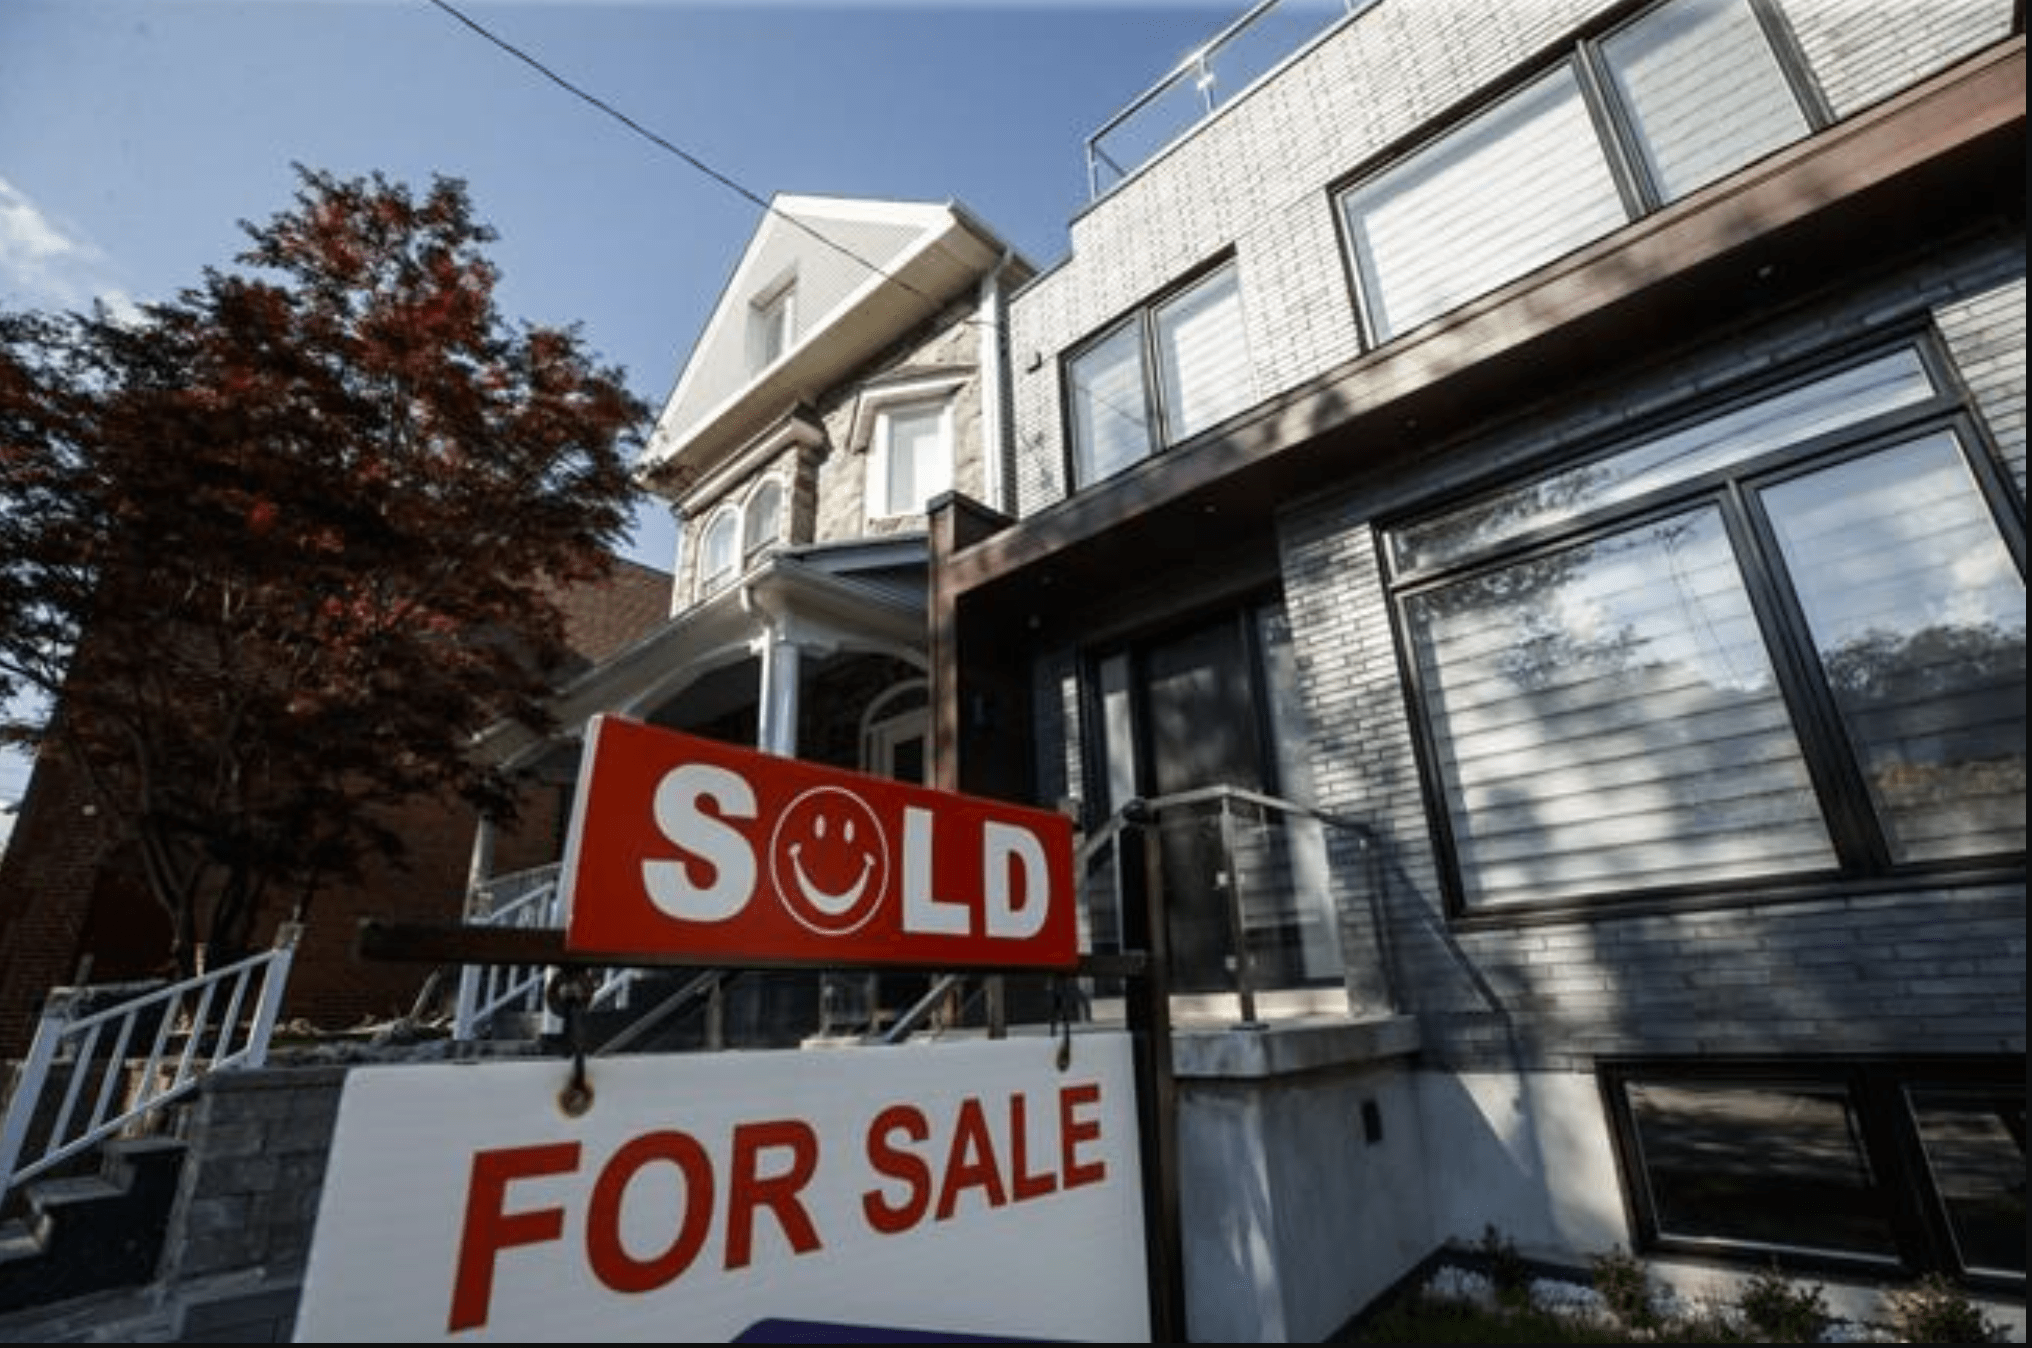 هیئت املاک و مستغلات گفت فروش خانه در تورنتو در ماه آگوست کاهش داشت